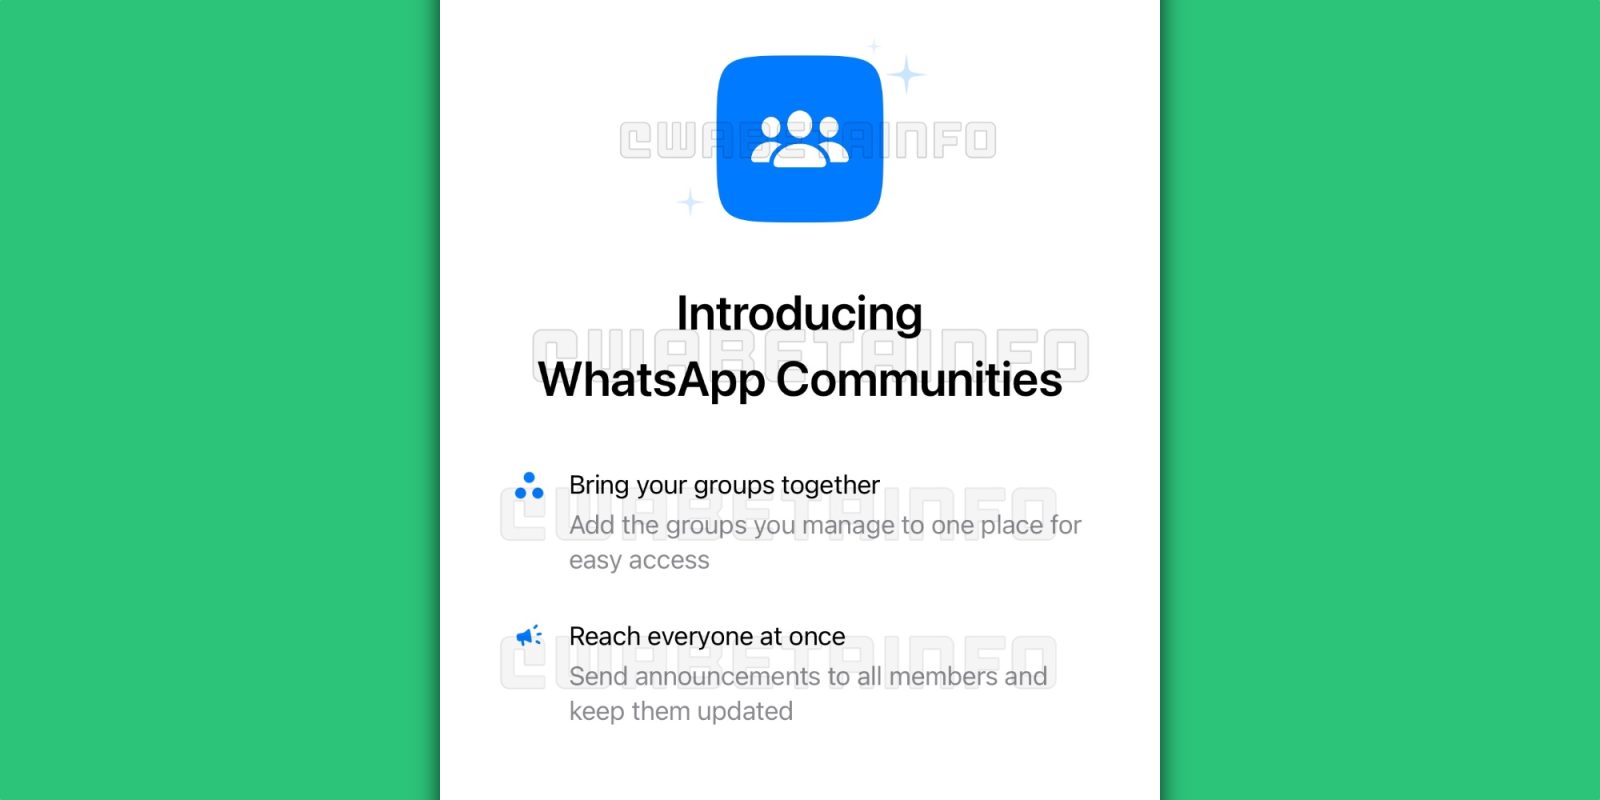 whatsapp-communities-9to5mac